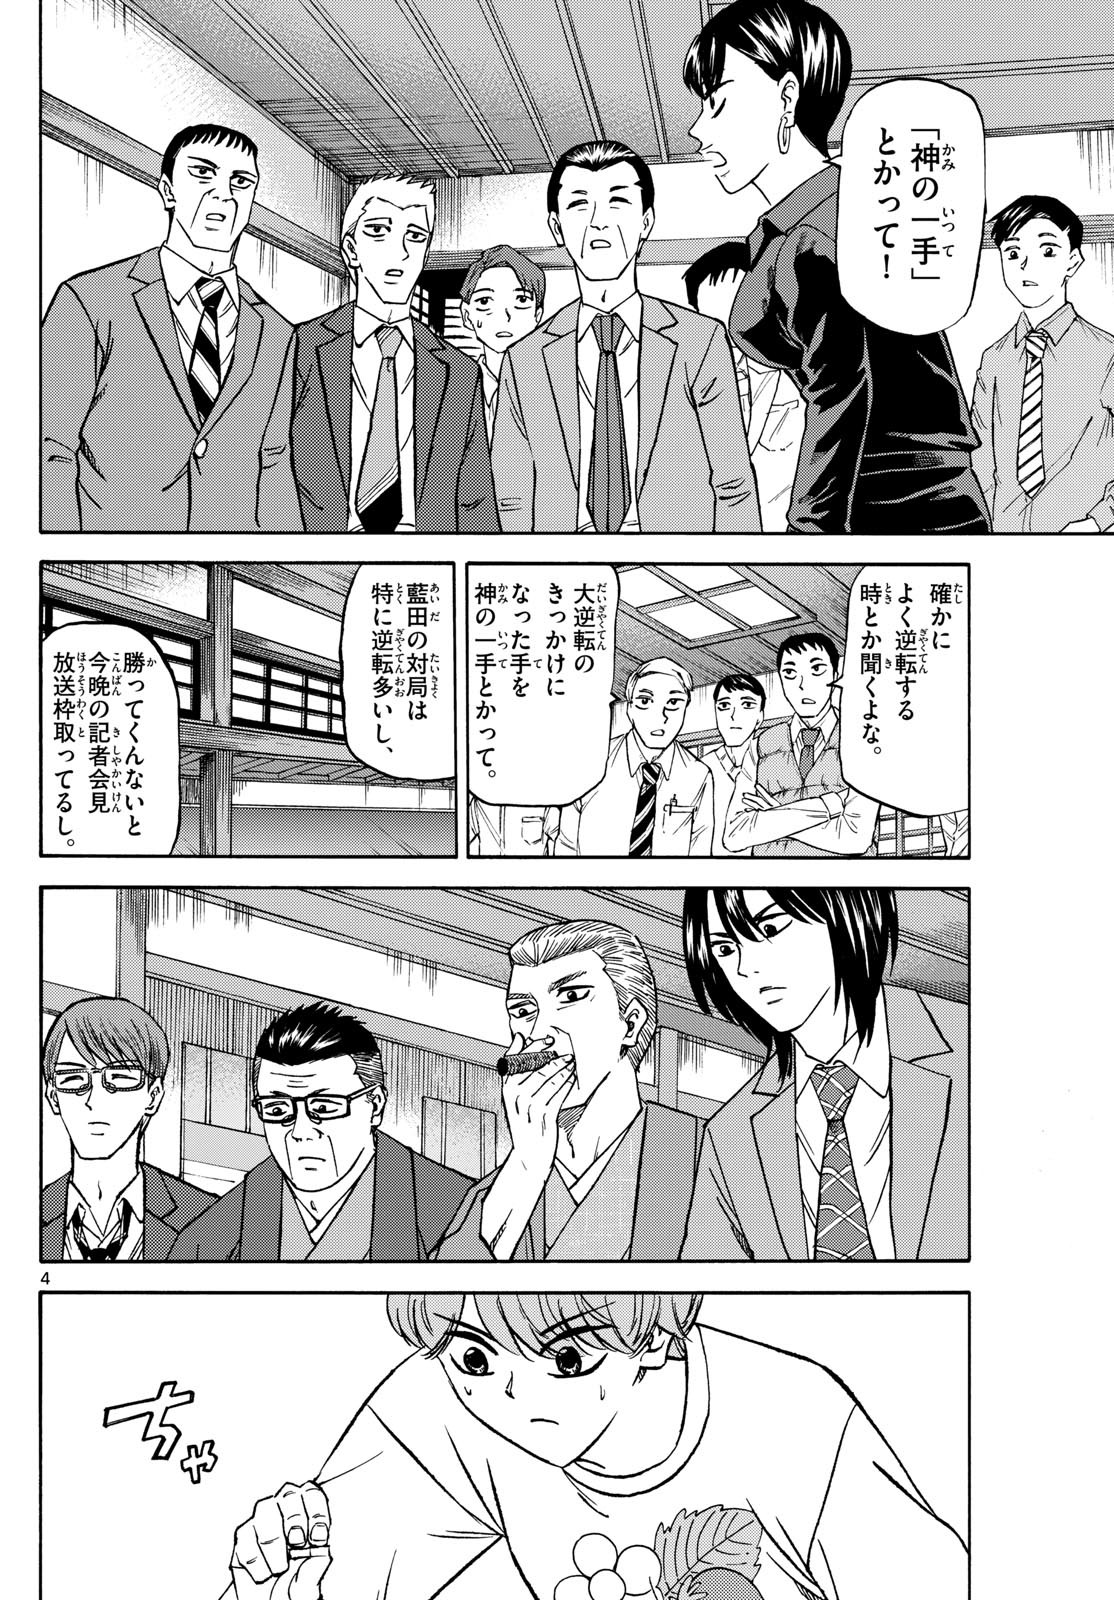 Ryu-to-Ichigo - Chapter 178 - Page 4